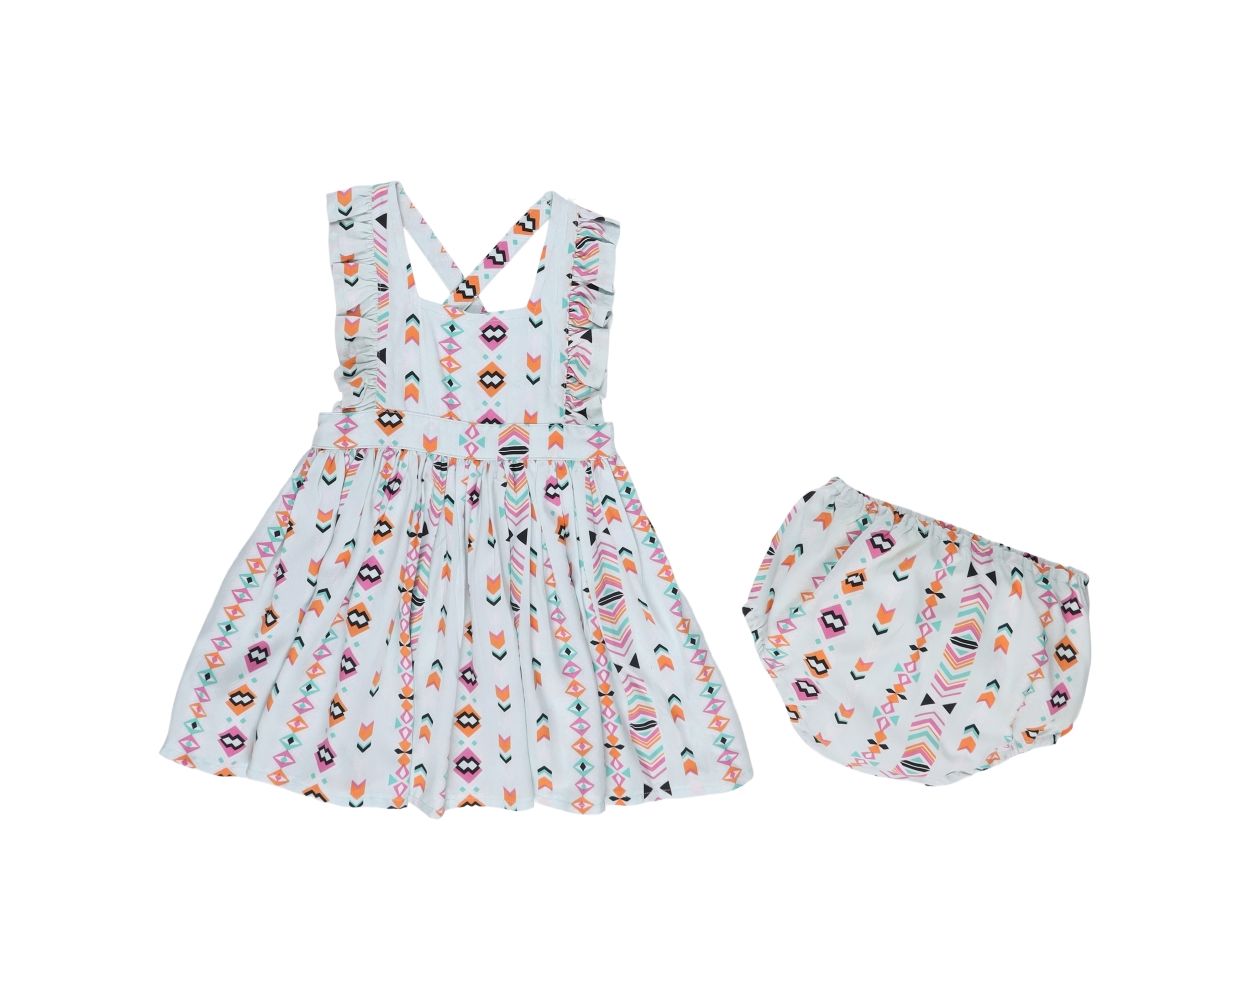 Infant & Toddler Girls Wrangler Cross Back Printed Dress